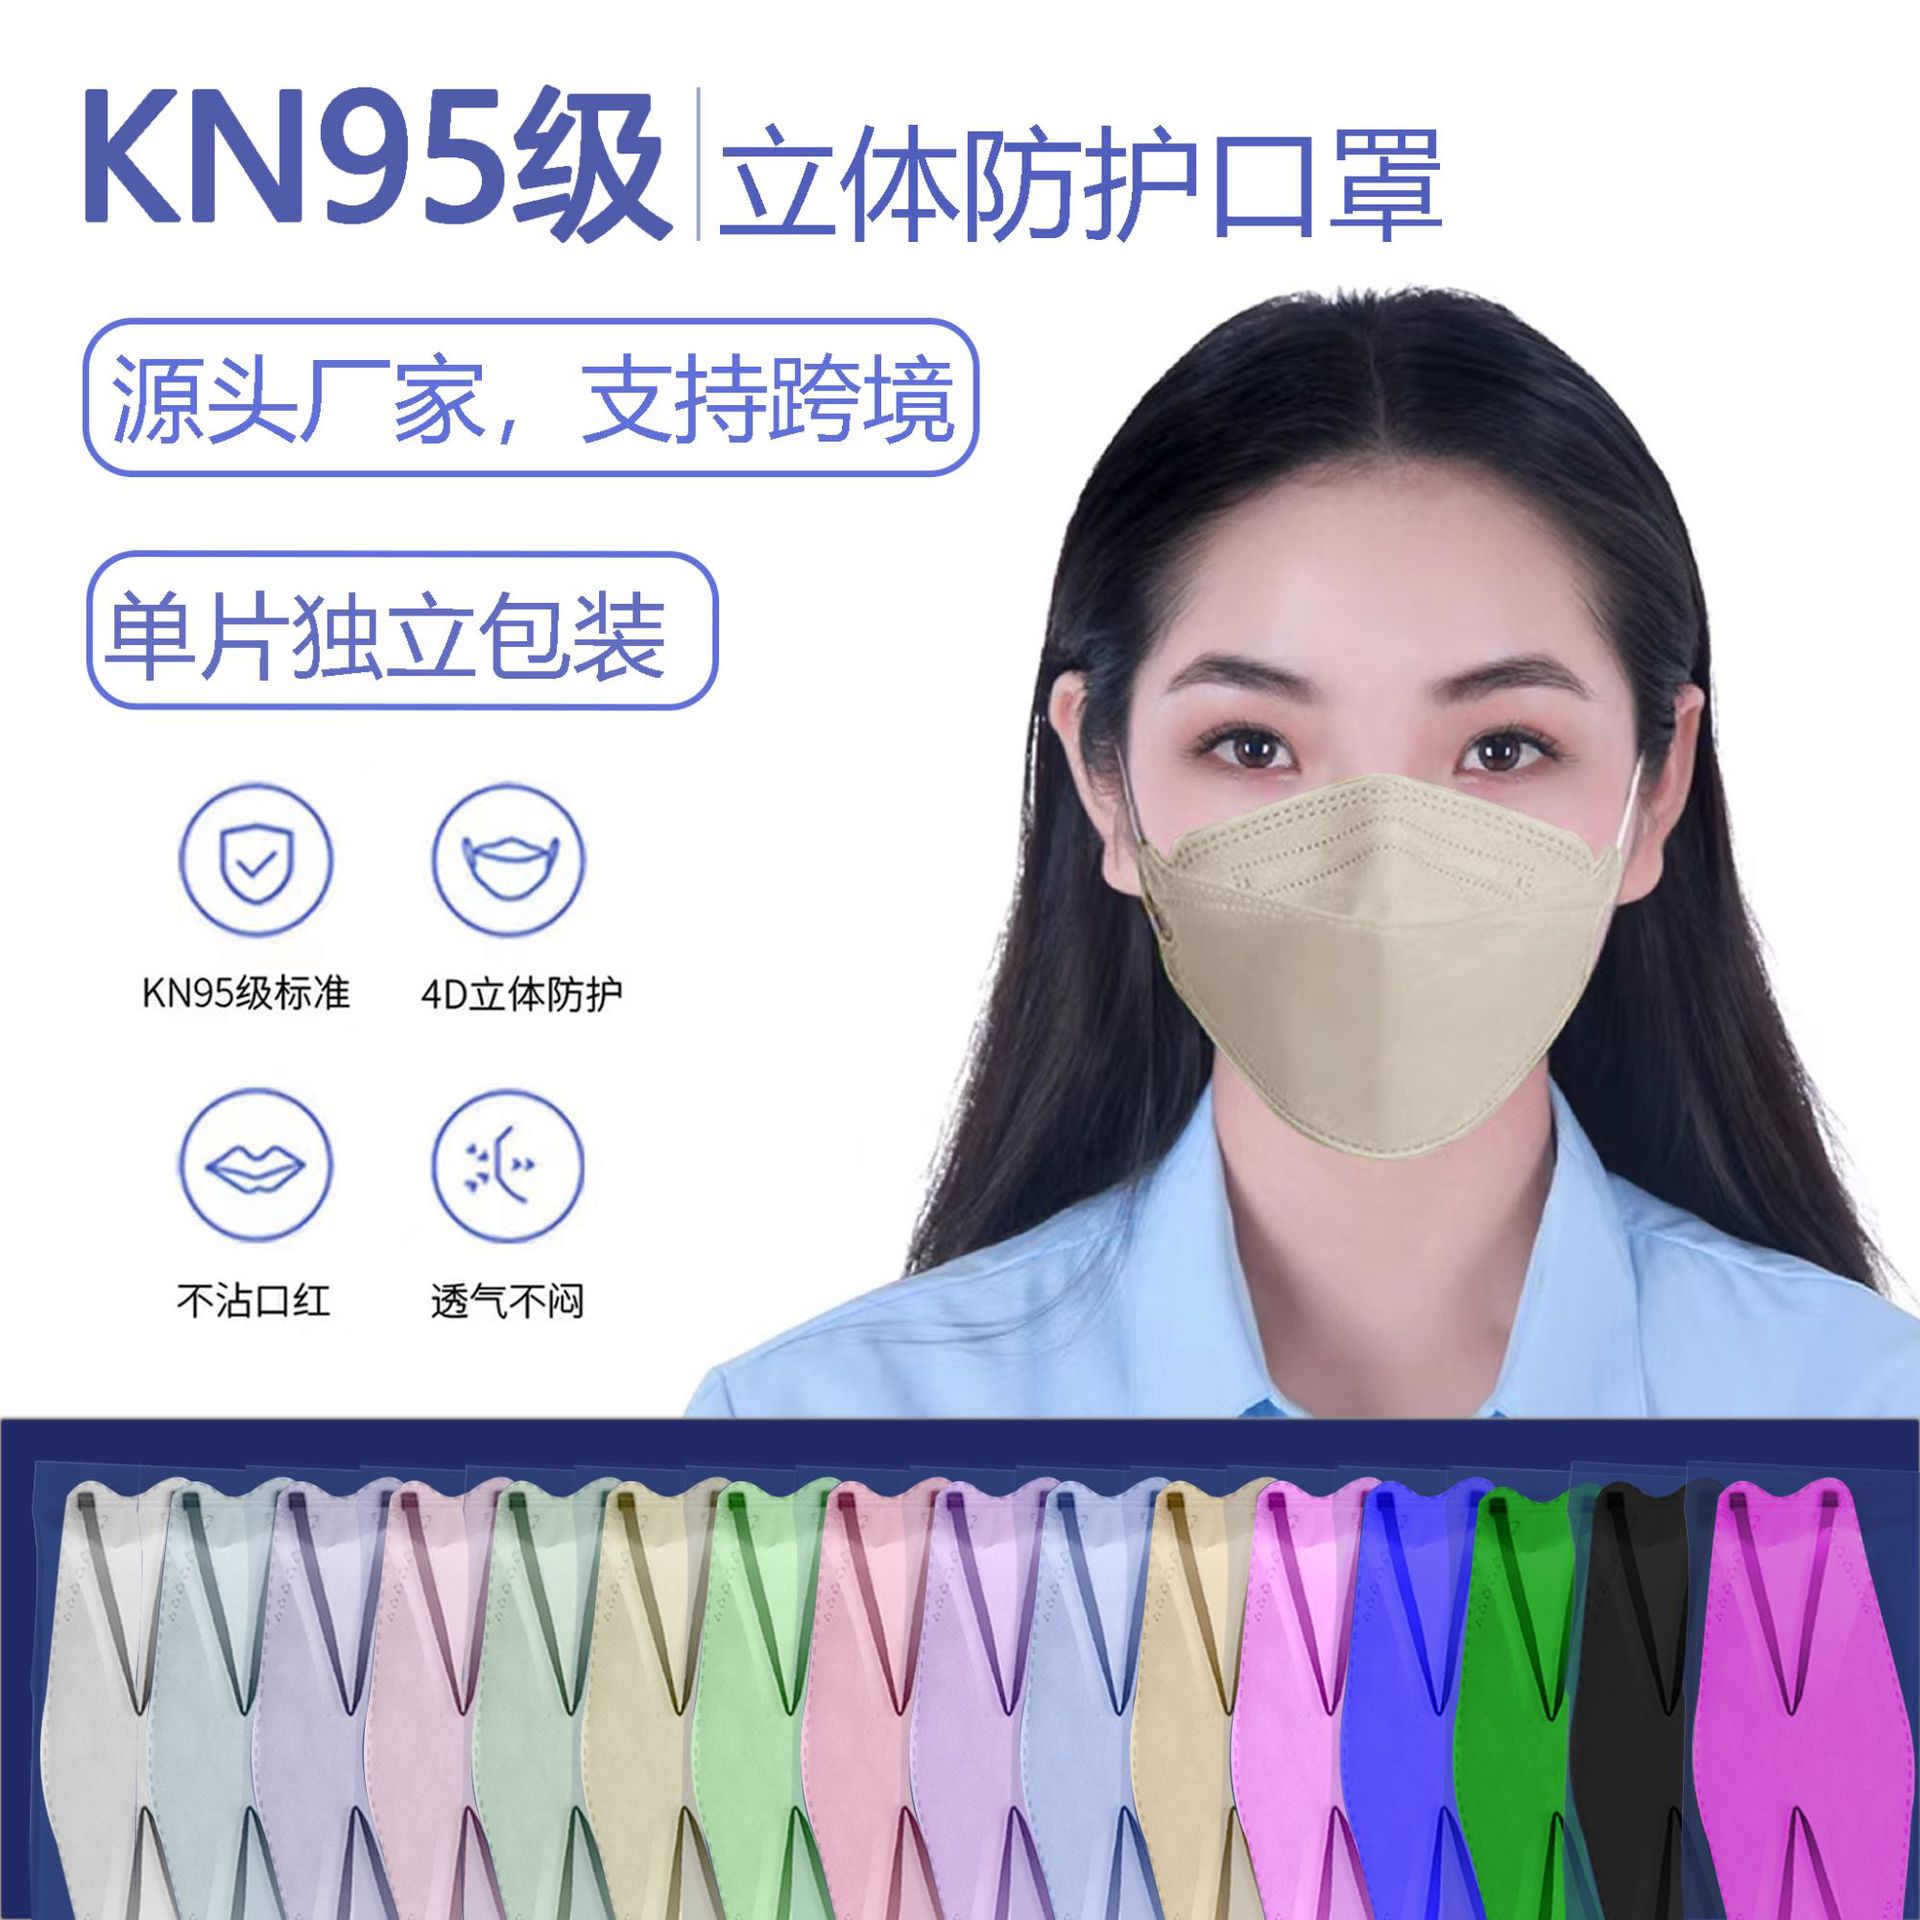 KN95 индивидуальная упаковка  KF94 маски   Kn94 трехмерный маски KF94 цвет Маска для лица 4 -го этажа